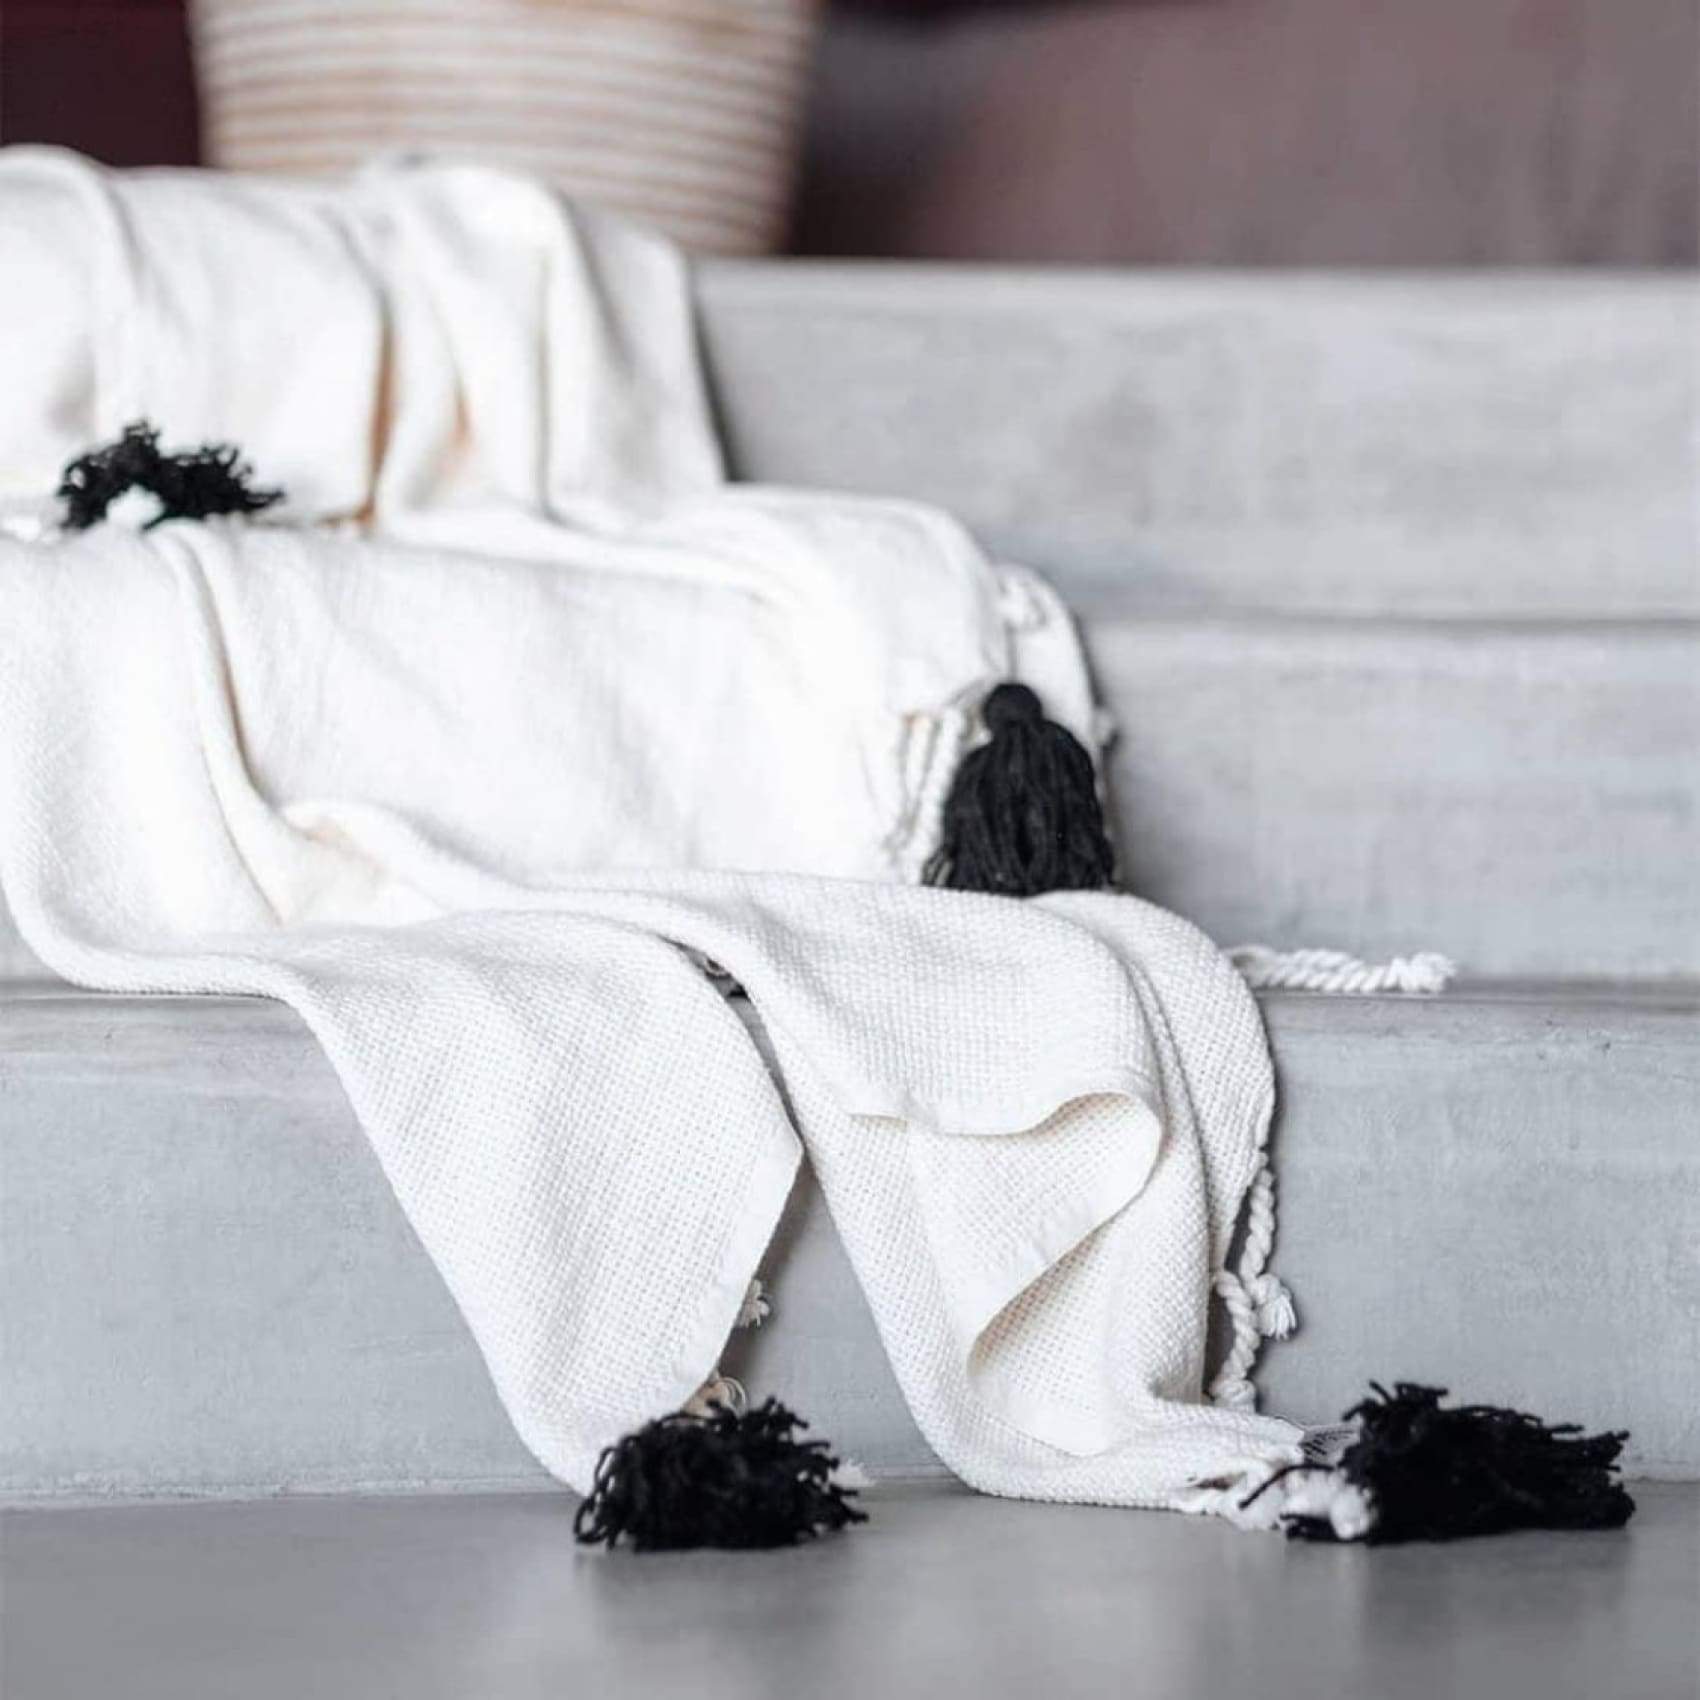 pom-cotton-weave-blanket-bedroom-cream-living-room-throw-luks-linen-shoulder-comfort-black-909.jpg